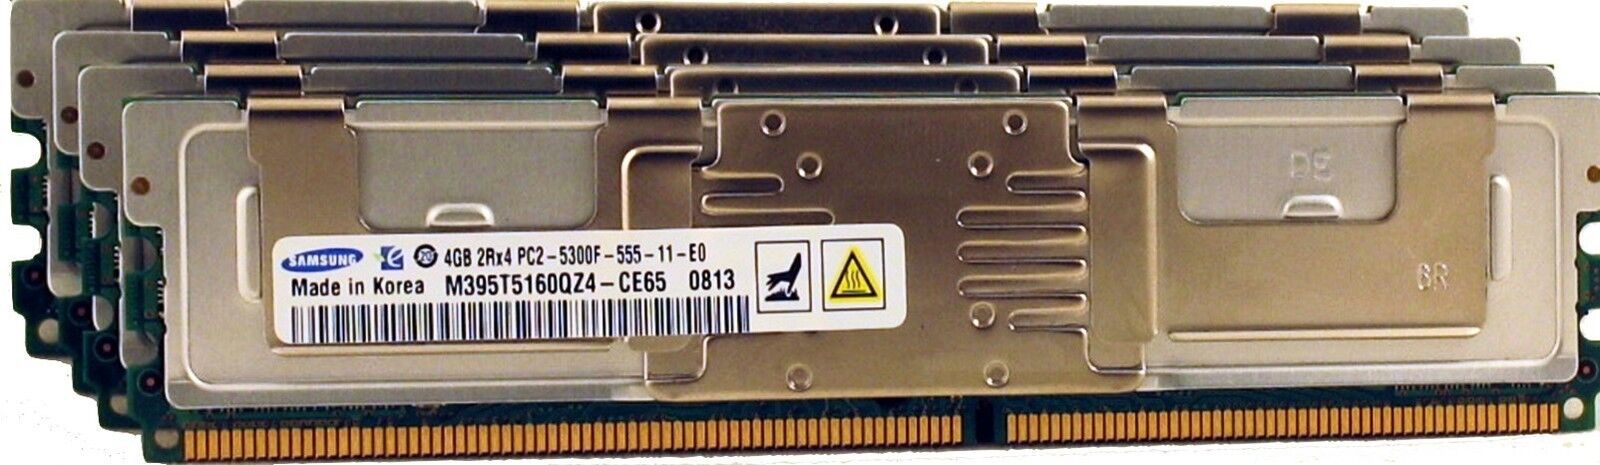 16 GB (4x4GB) FBD Memory Kit For Dell PowerEdge 2900,2950, 1900, 1950, 1955,R900